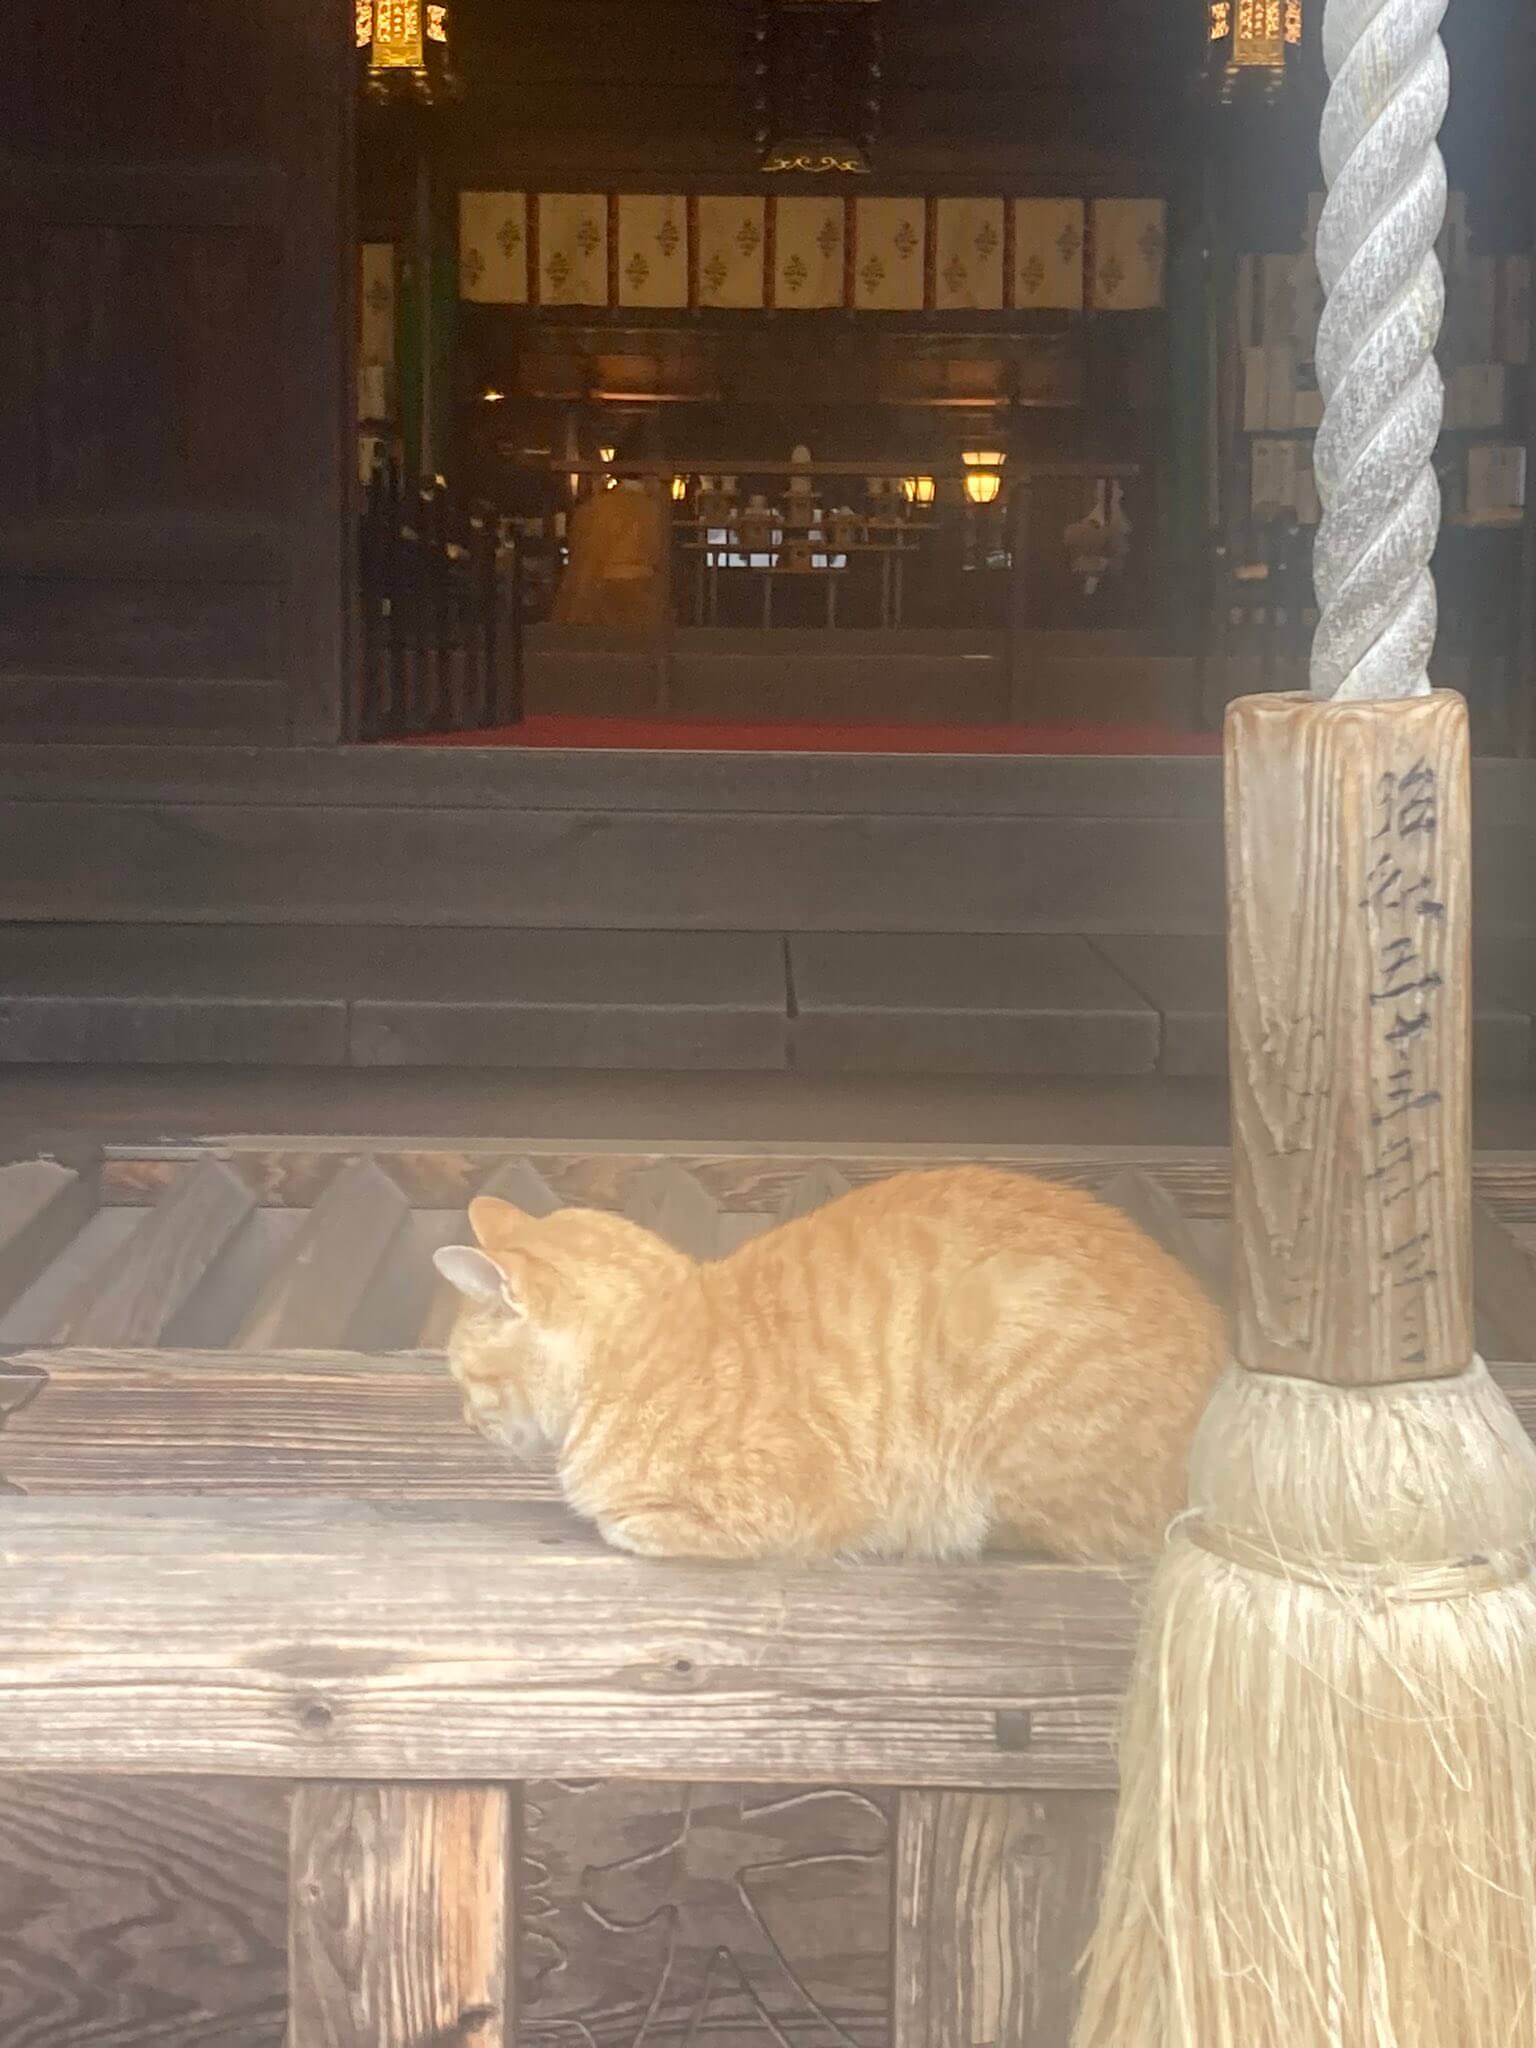 お賽銭箱の前で香箱座りをする茶トラ猫 in 小倉城内にある八坂神社